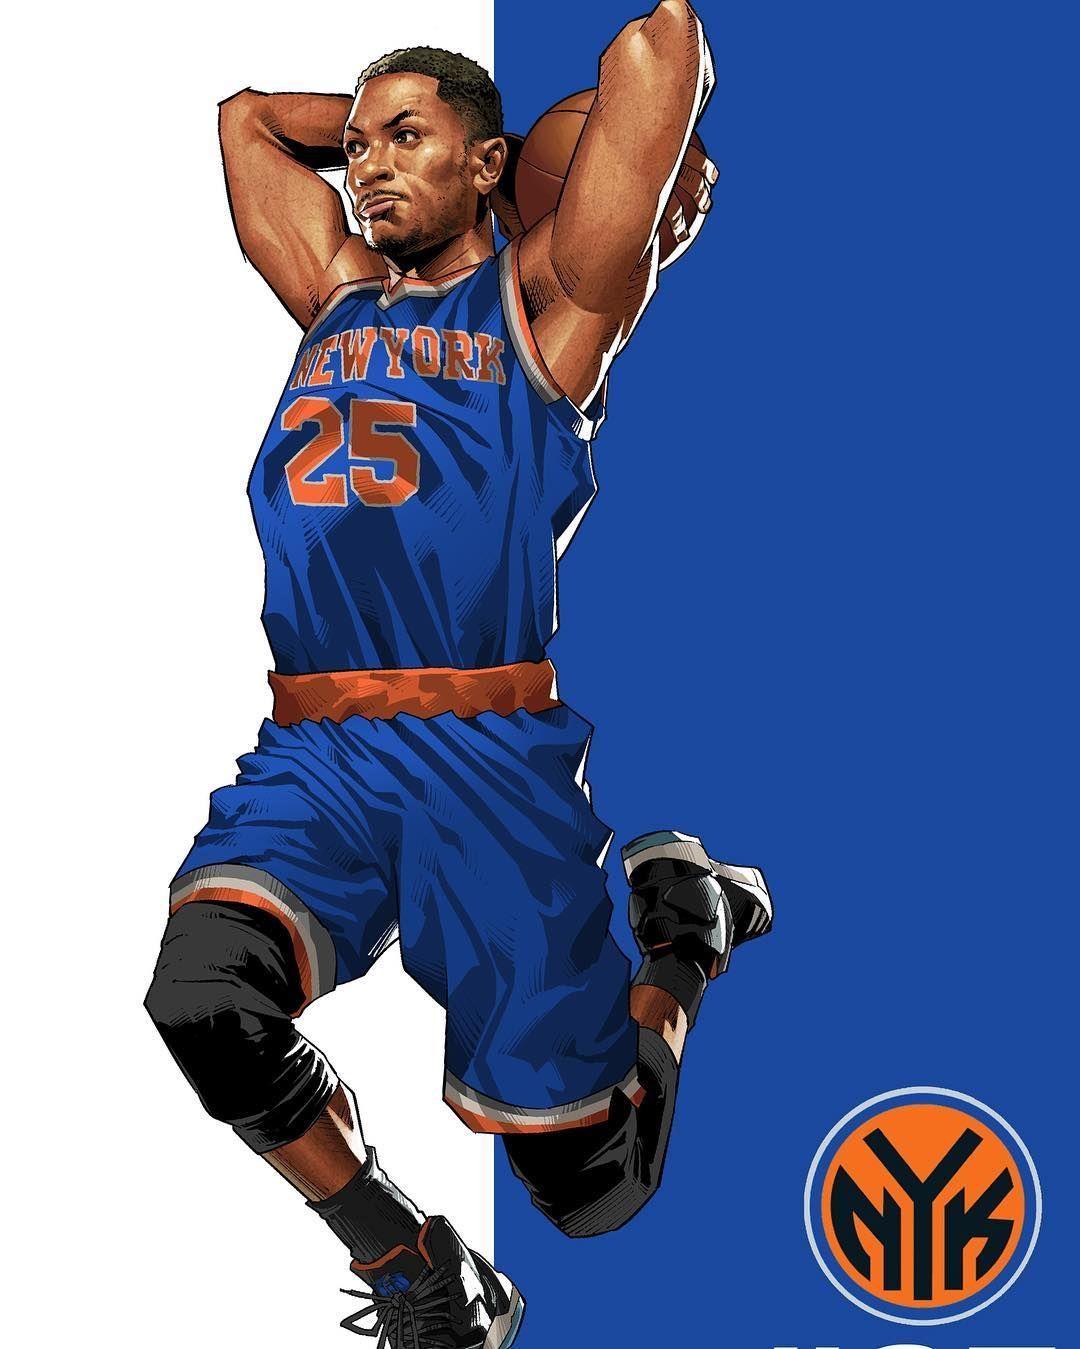 New York Knicks Wallpaper  High Definition High Resolution HD Wallpapers   High Definition High Resolution HD Wallpapers